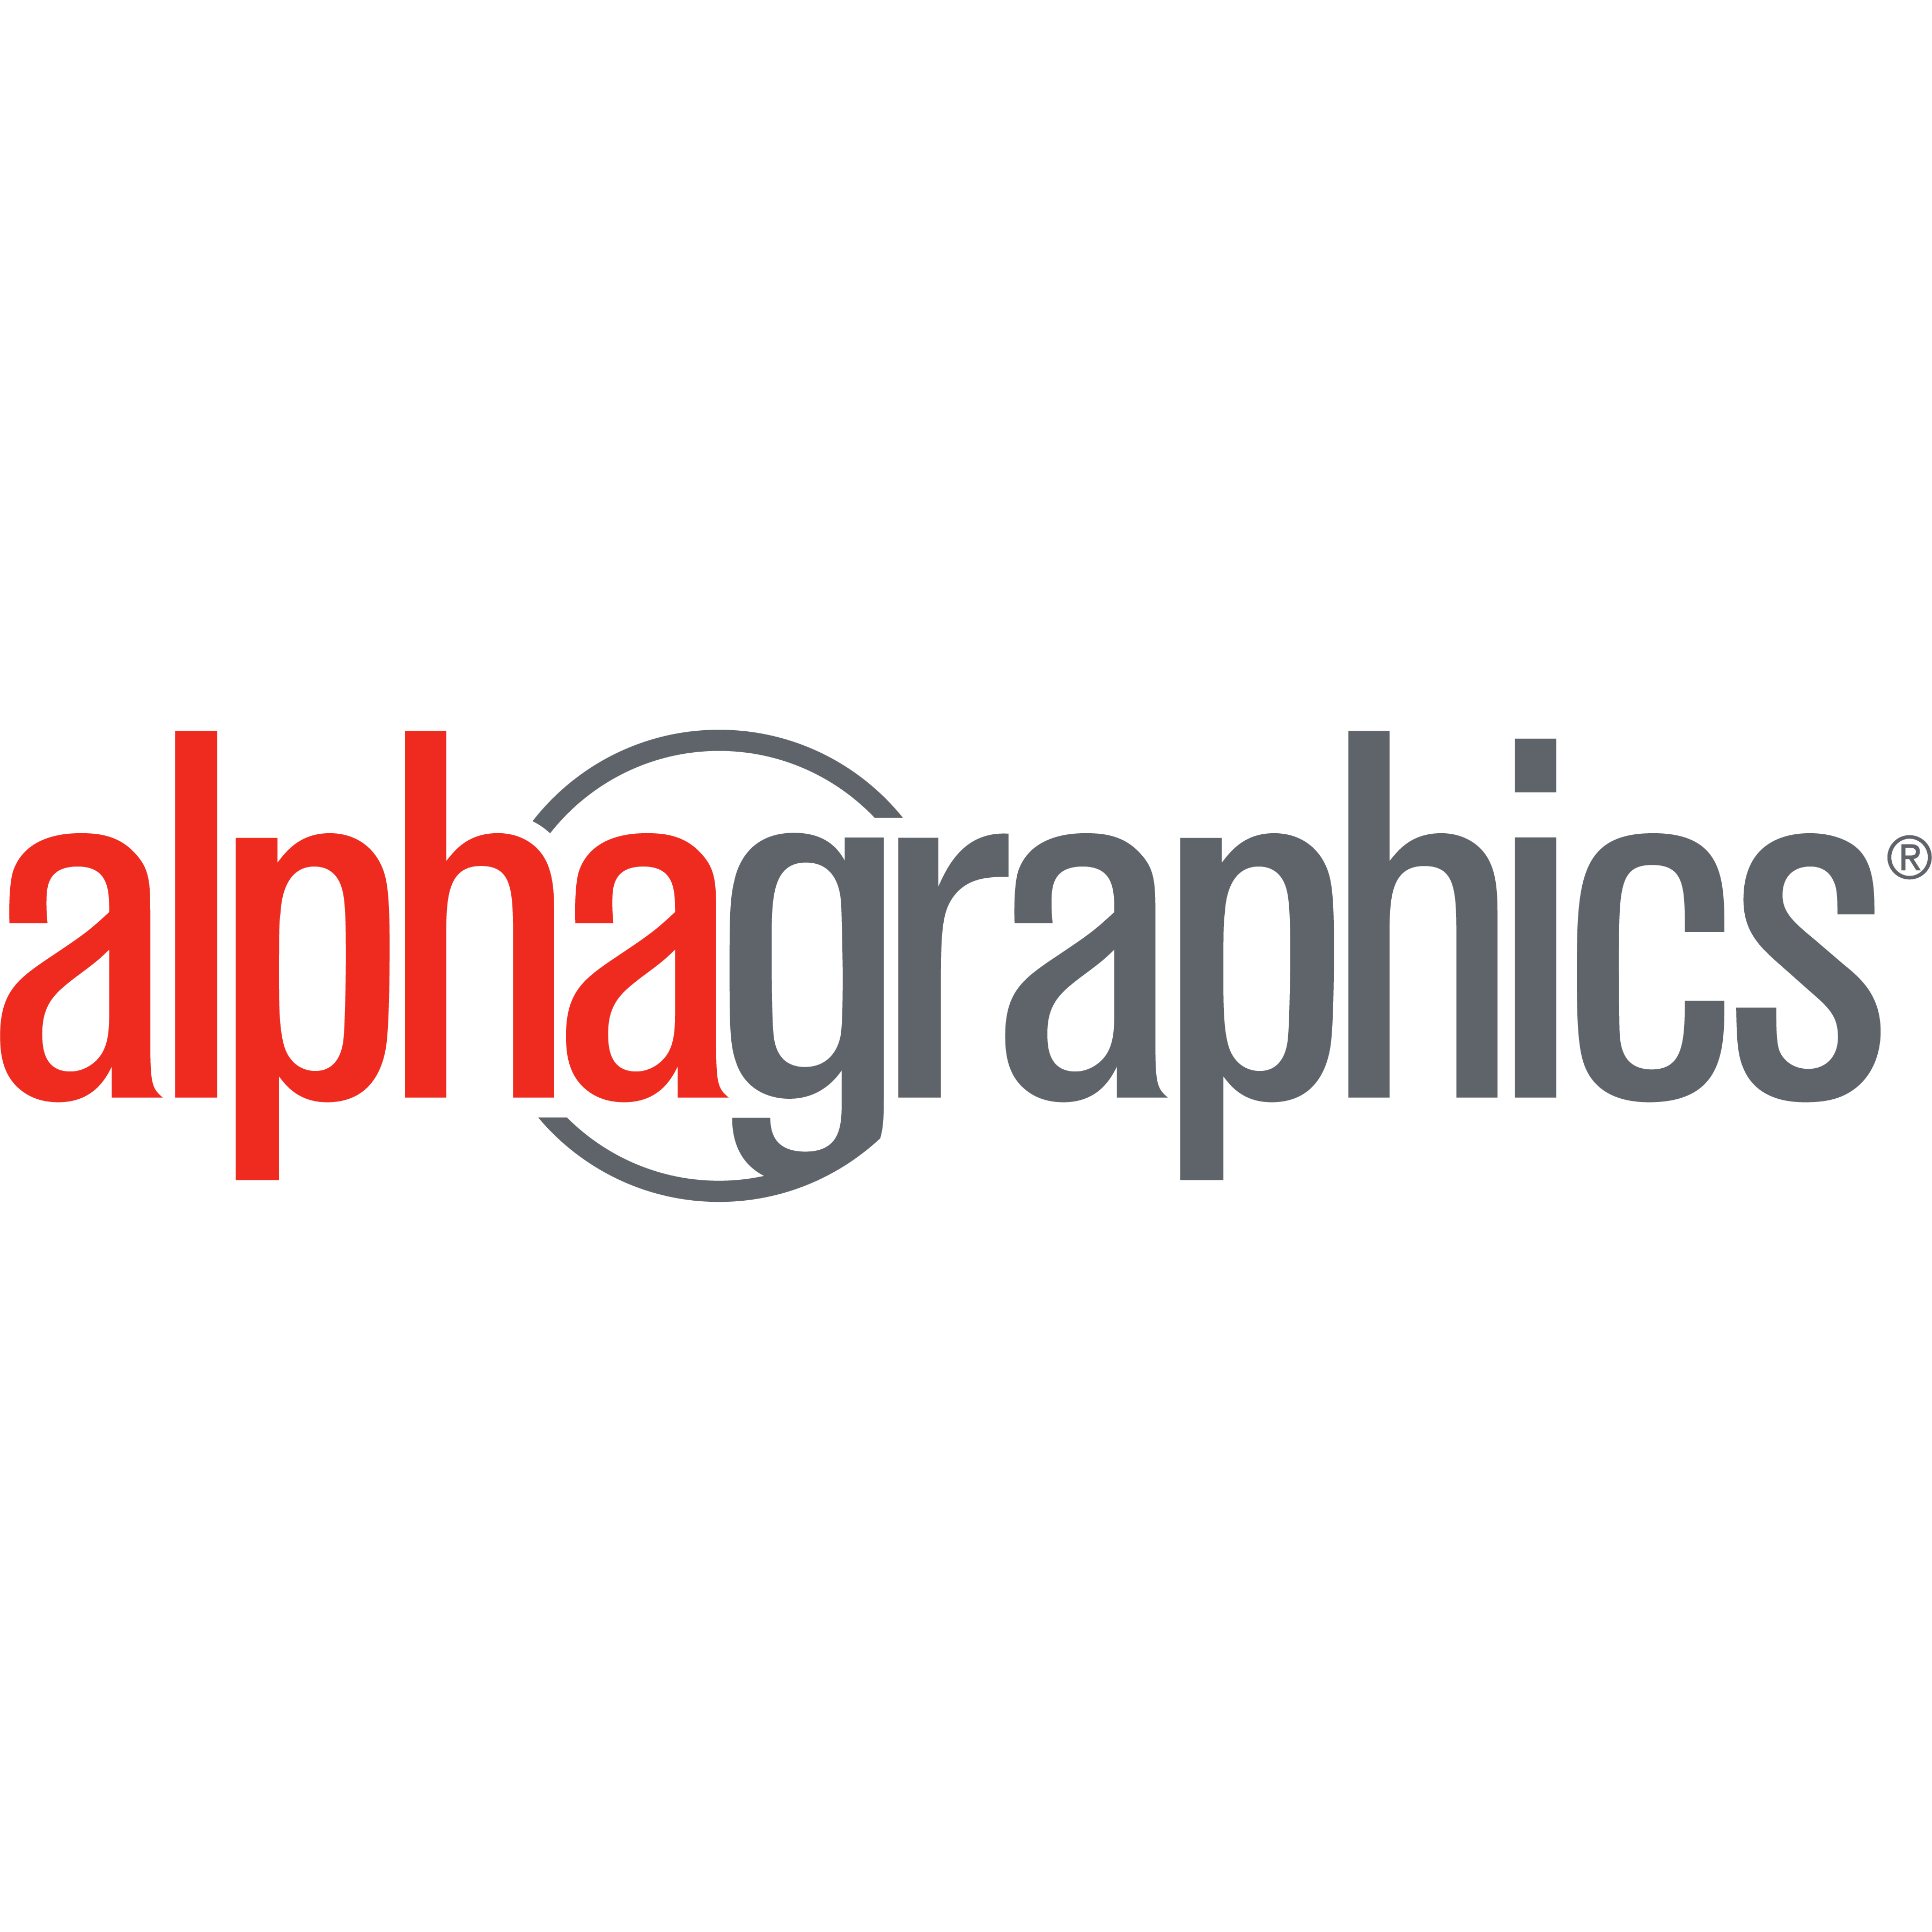 AlphaGraphics Boston Downtown - Boston, MA 02114 - (617)742-9585 | ShowMeLocal.com